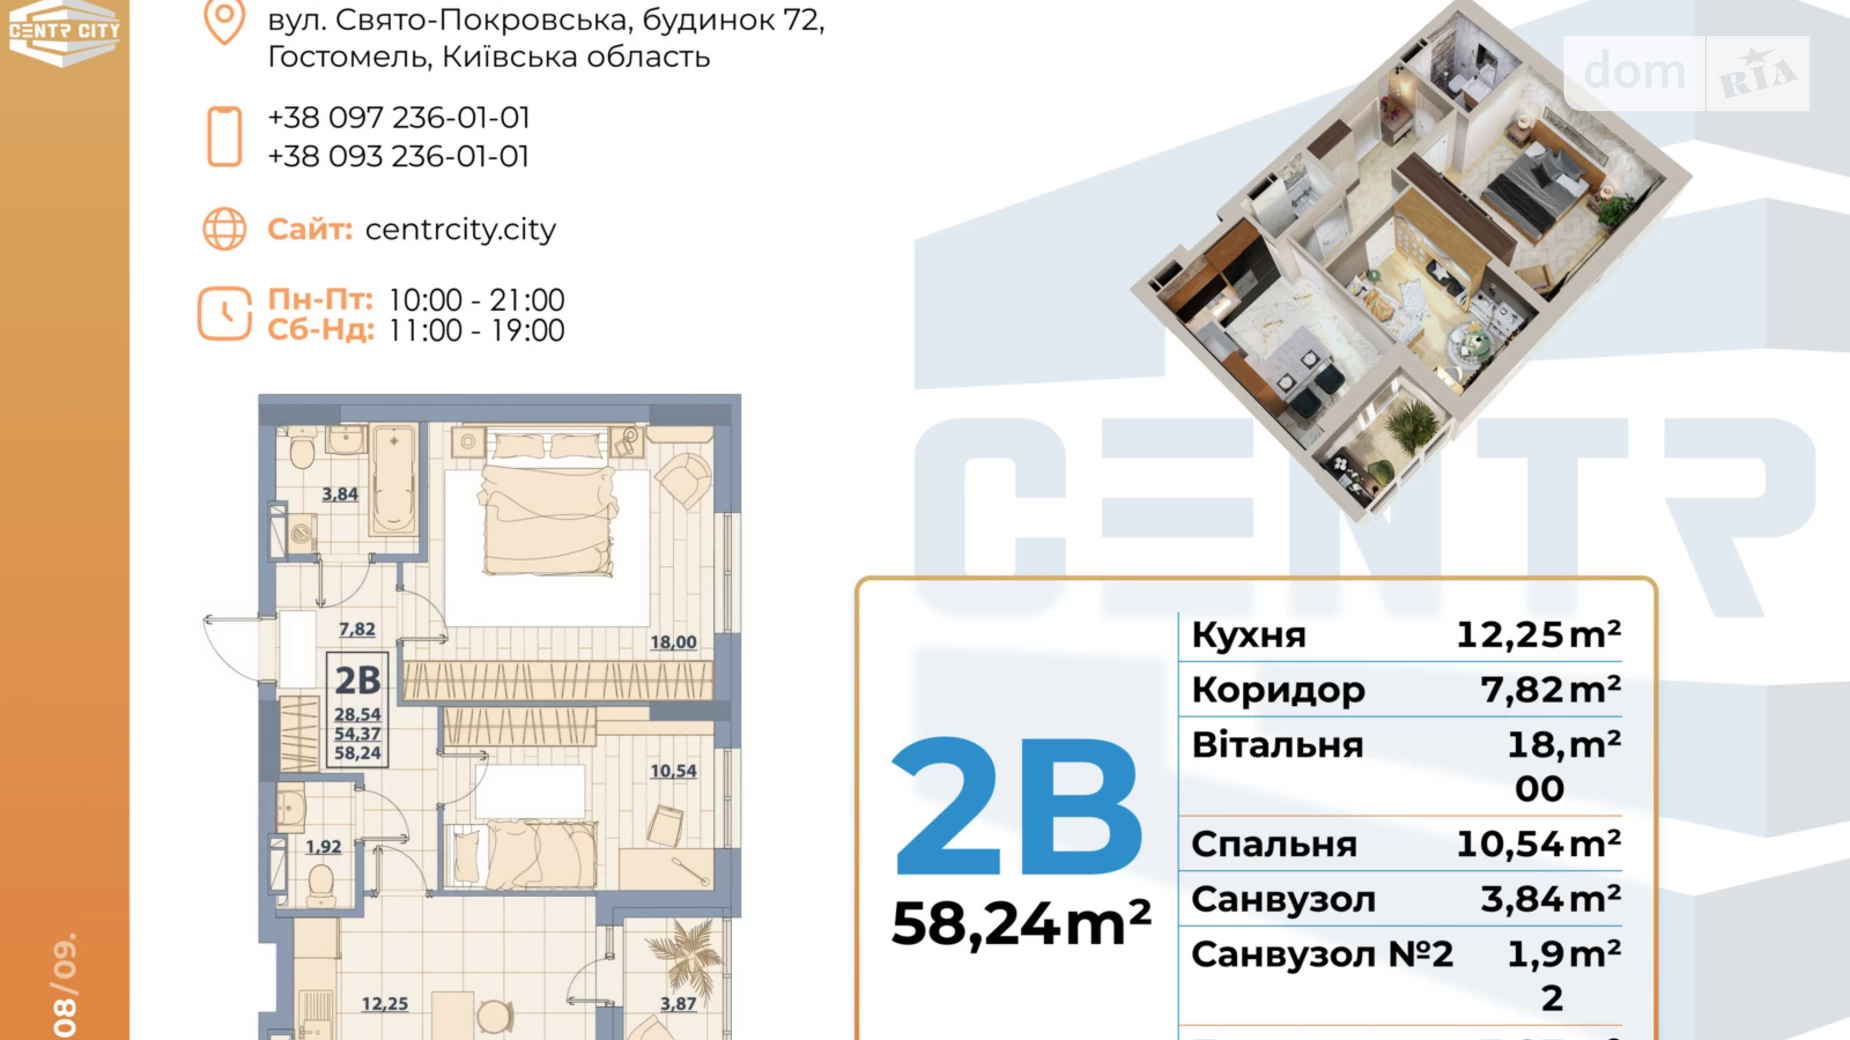 Продается 2-комнатная квартира 64 кв. м в Гостомеле, ул. Свято-Покровская, 72